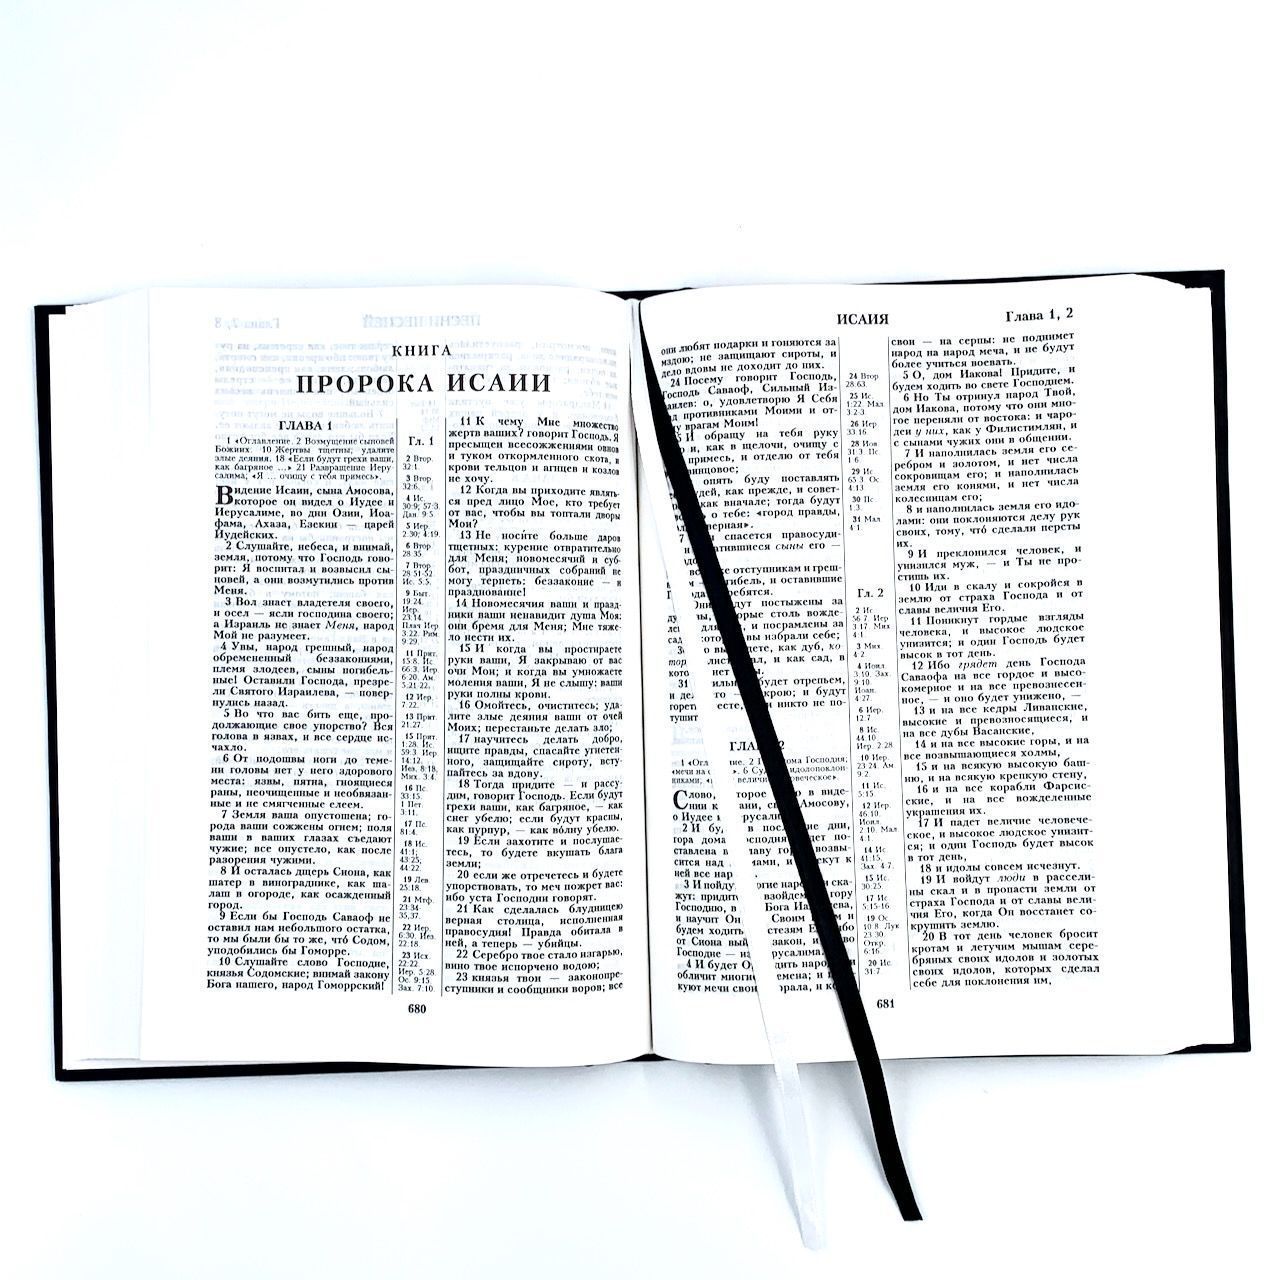 Библия 076 код 23076-1,  надпись "Библия" твердый переплет,  цвет черный, размер 170x240 мм